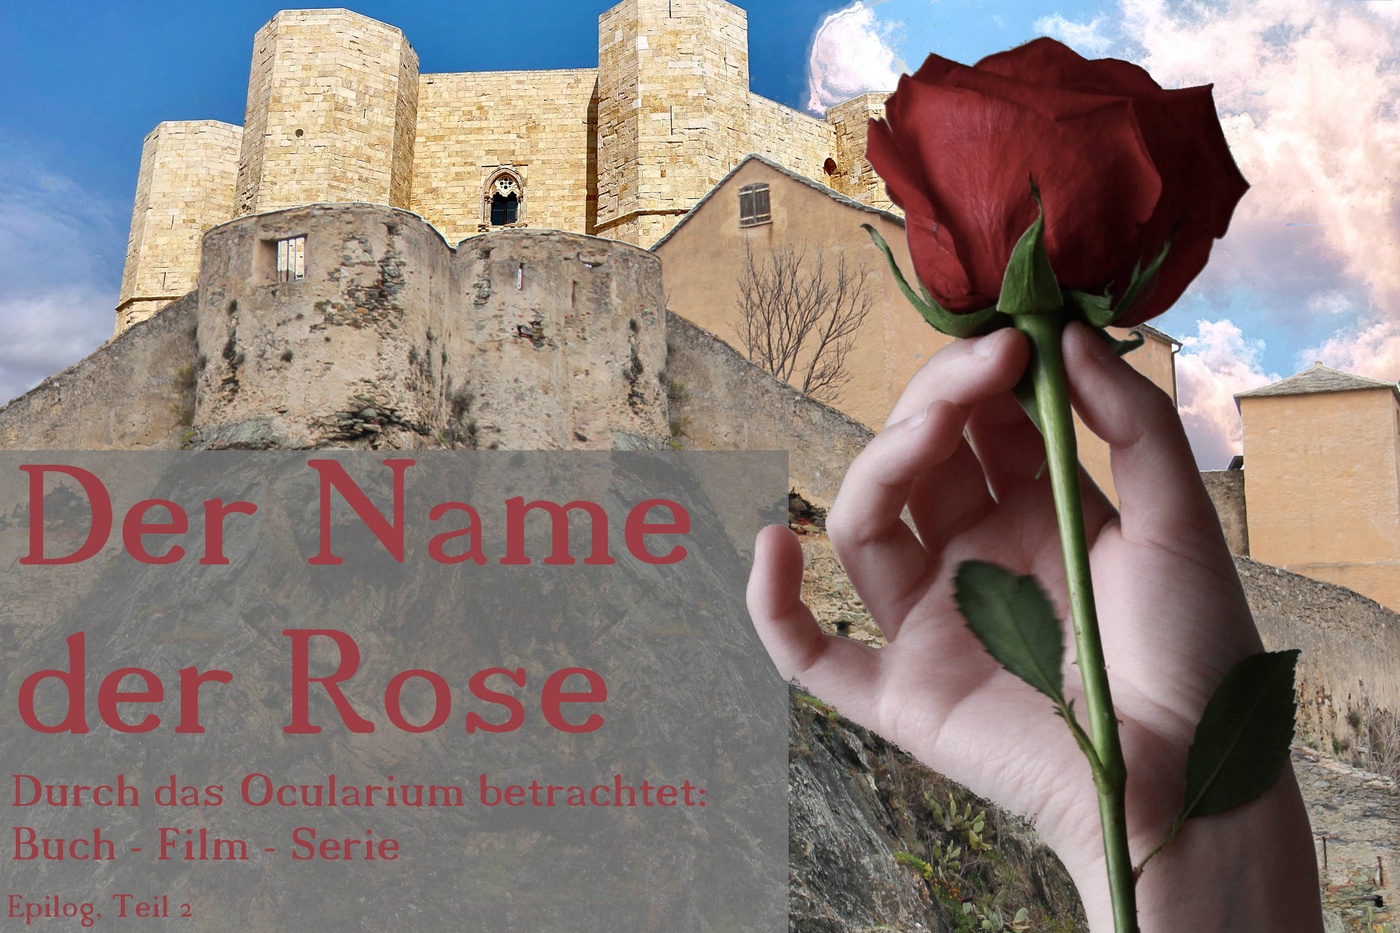 Der Name der Rose - Durch das Ocularium betrachtet: Buch - Film - Serie (11)